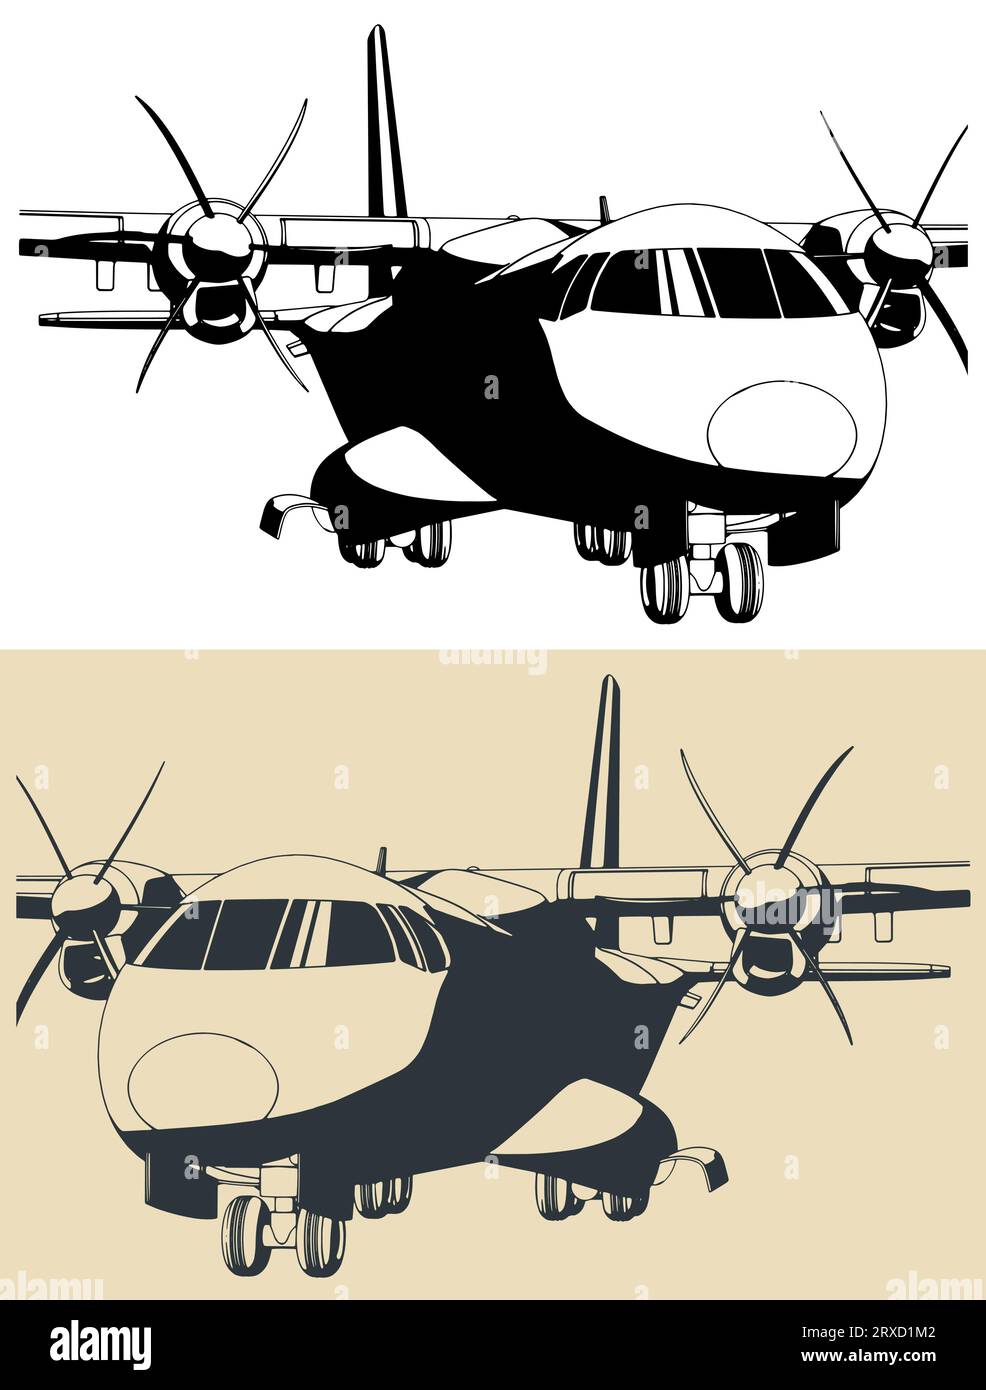 Illustrazioni vettoriali stilizzate di aerei da trasporto a turboelica in primo piano Illustrazione Vettoriale